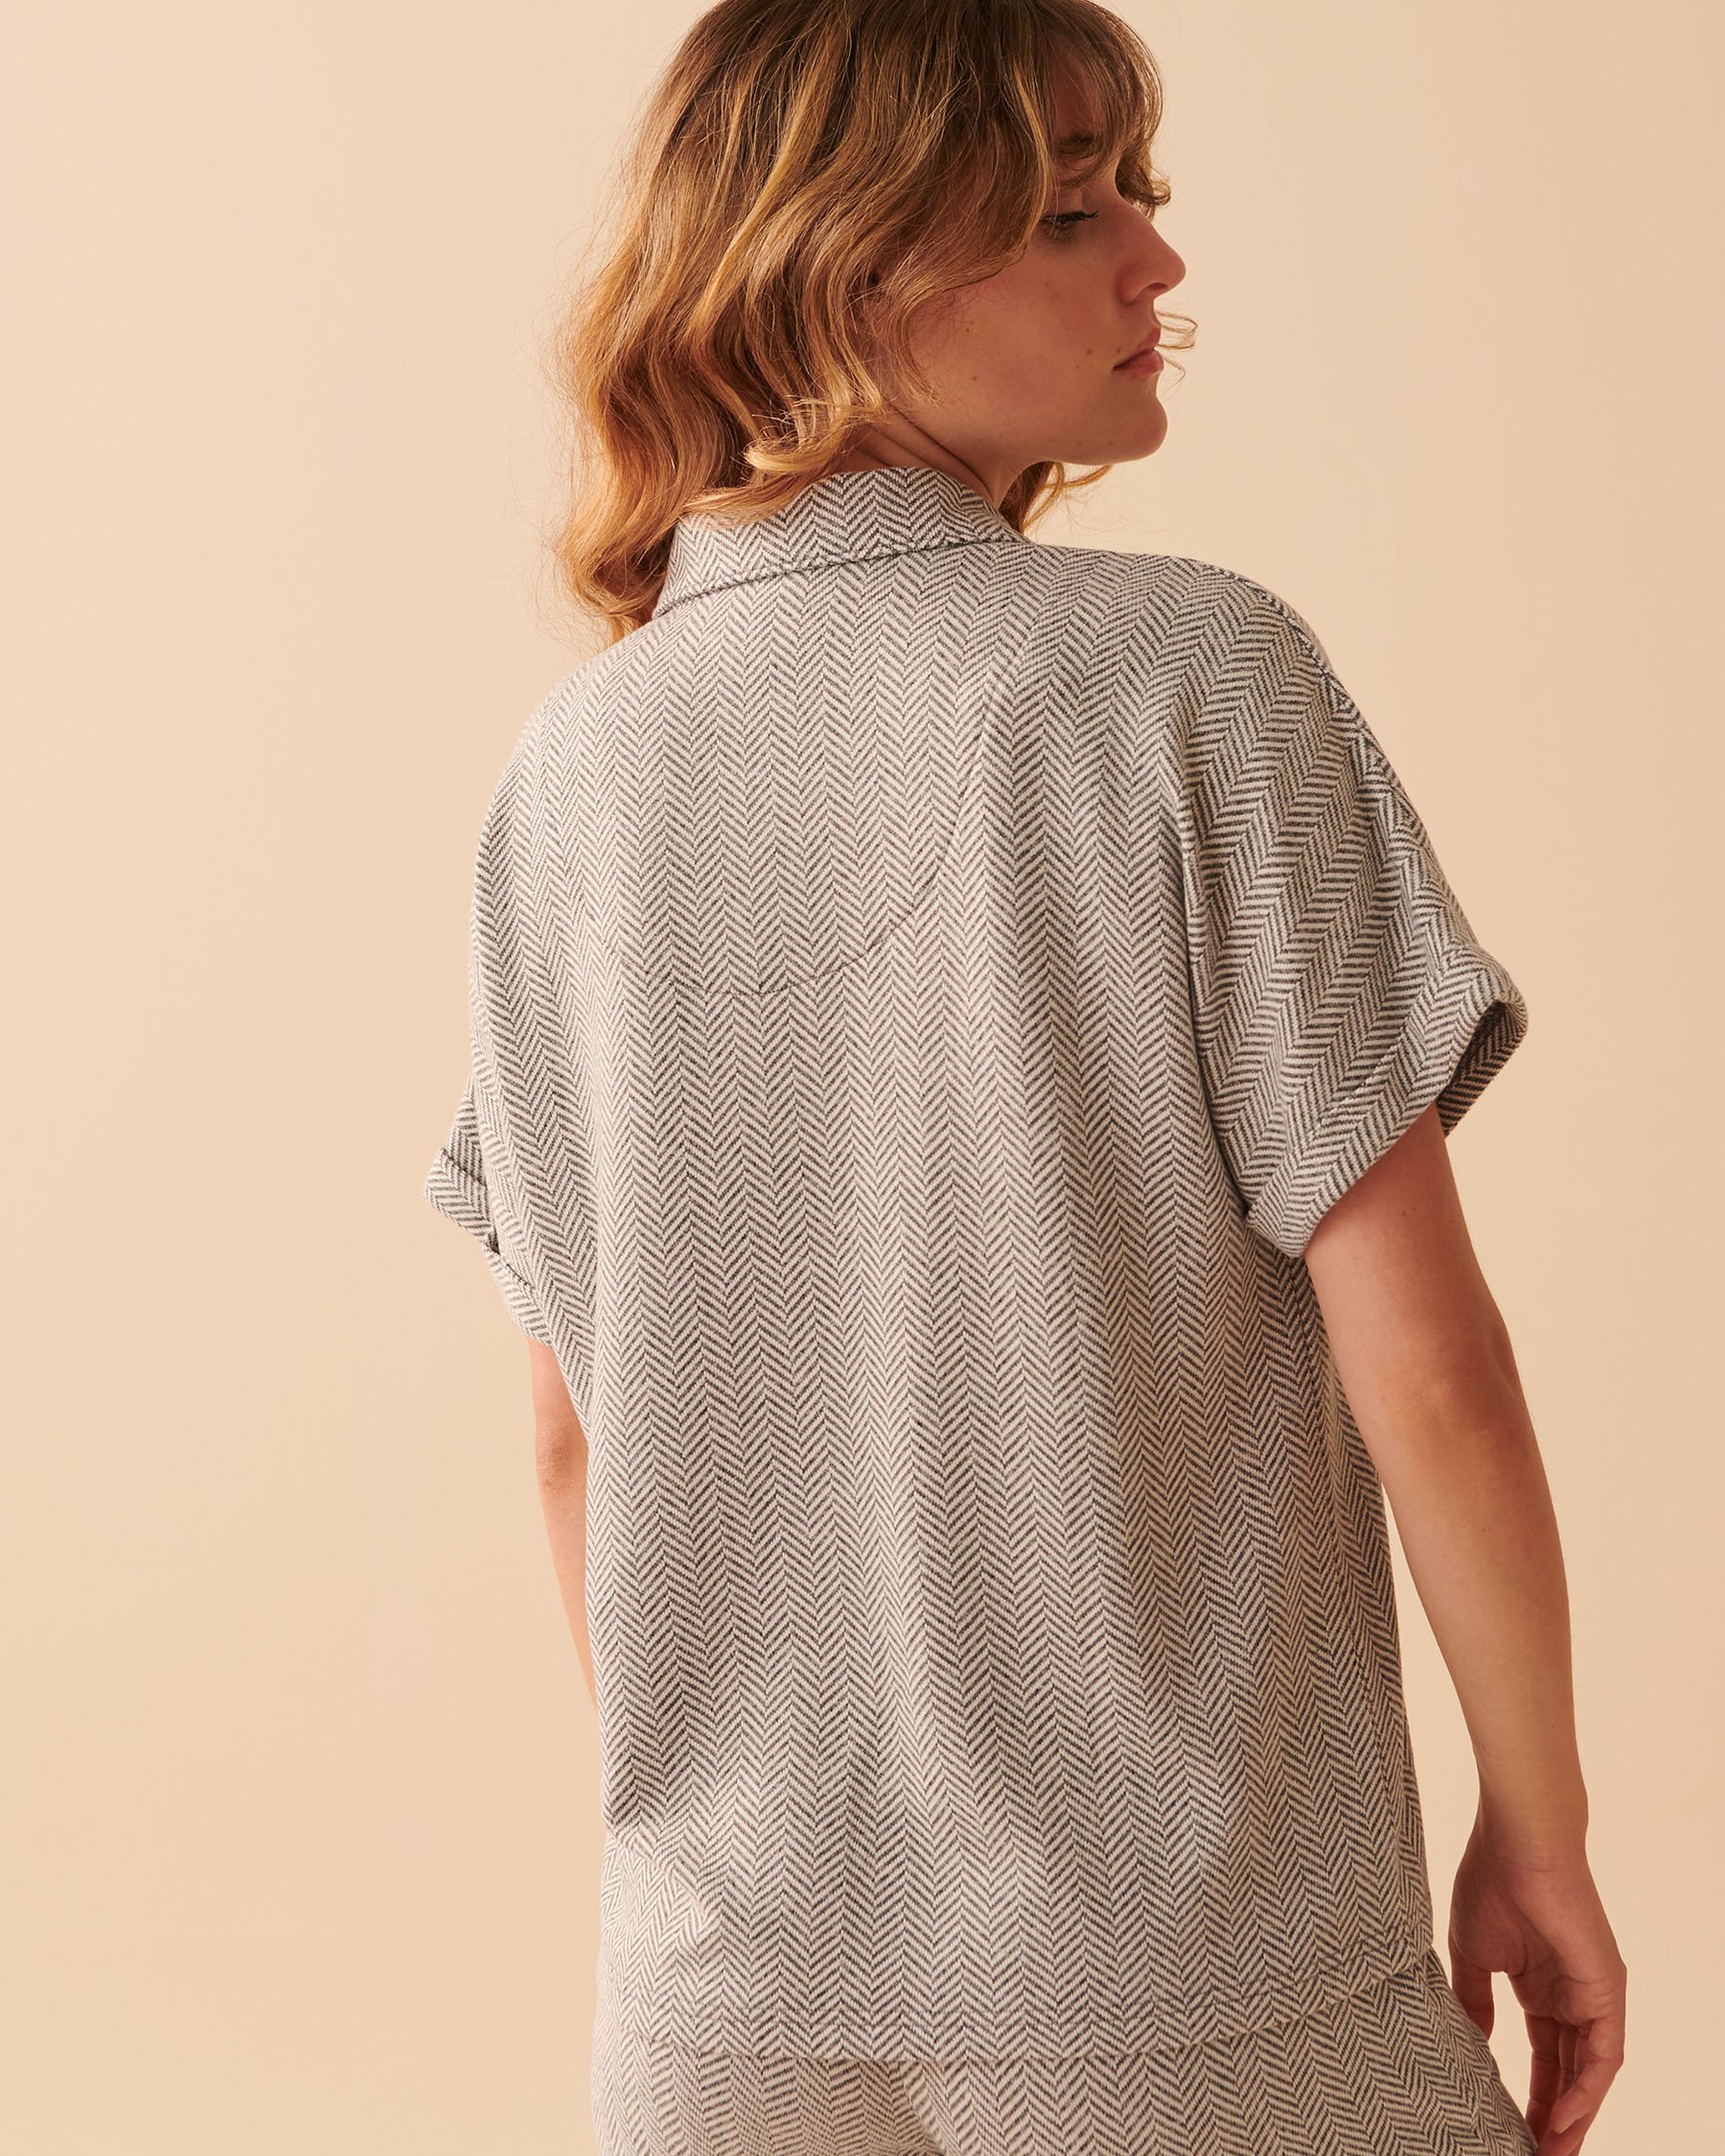 LA VIE EN ROSE Soft Knit Button-down Short Sleeve Shirt Light charcoal mix 40100478 - View2